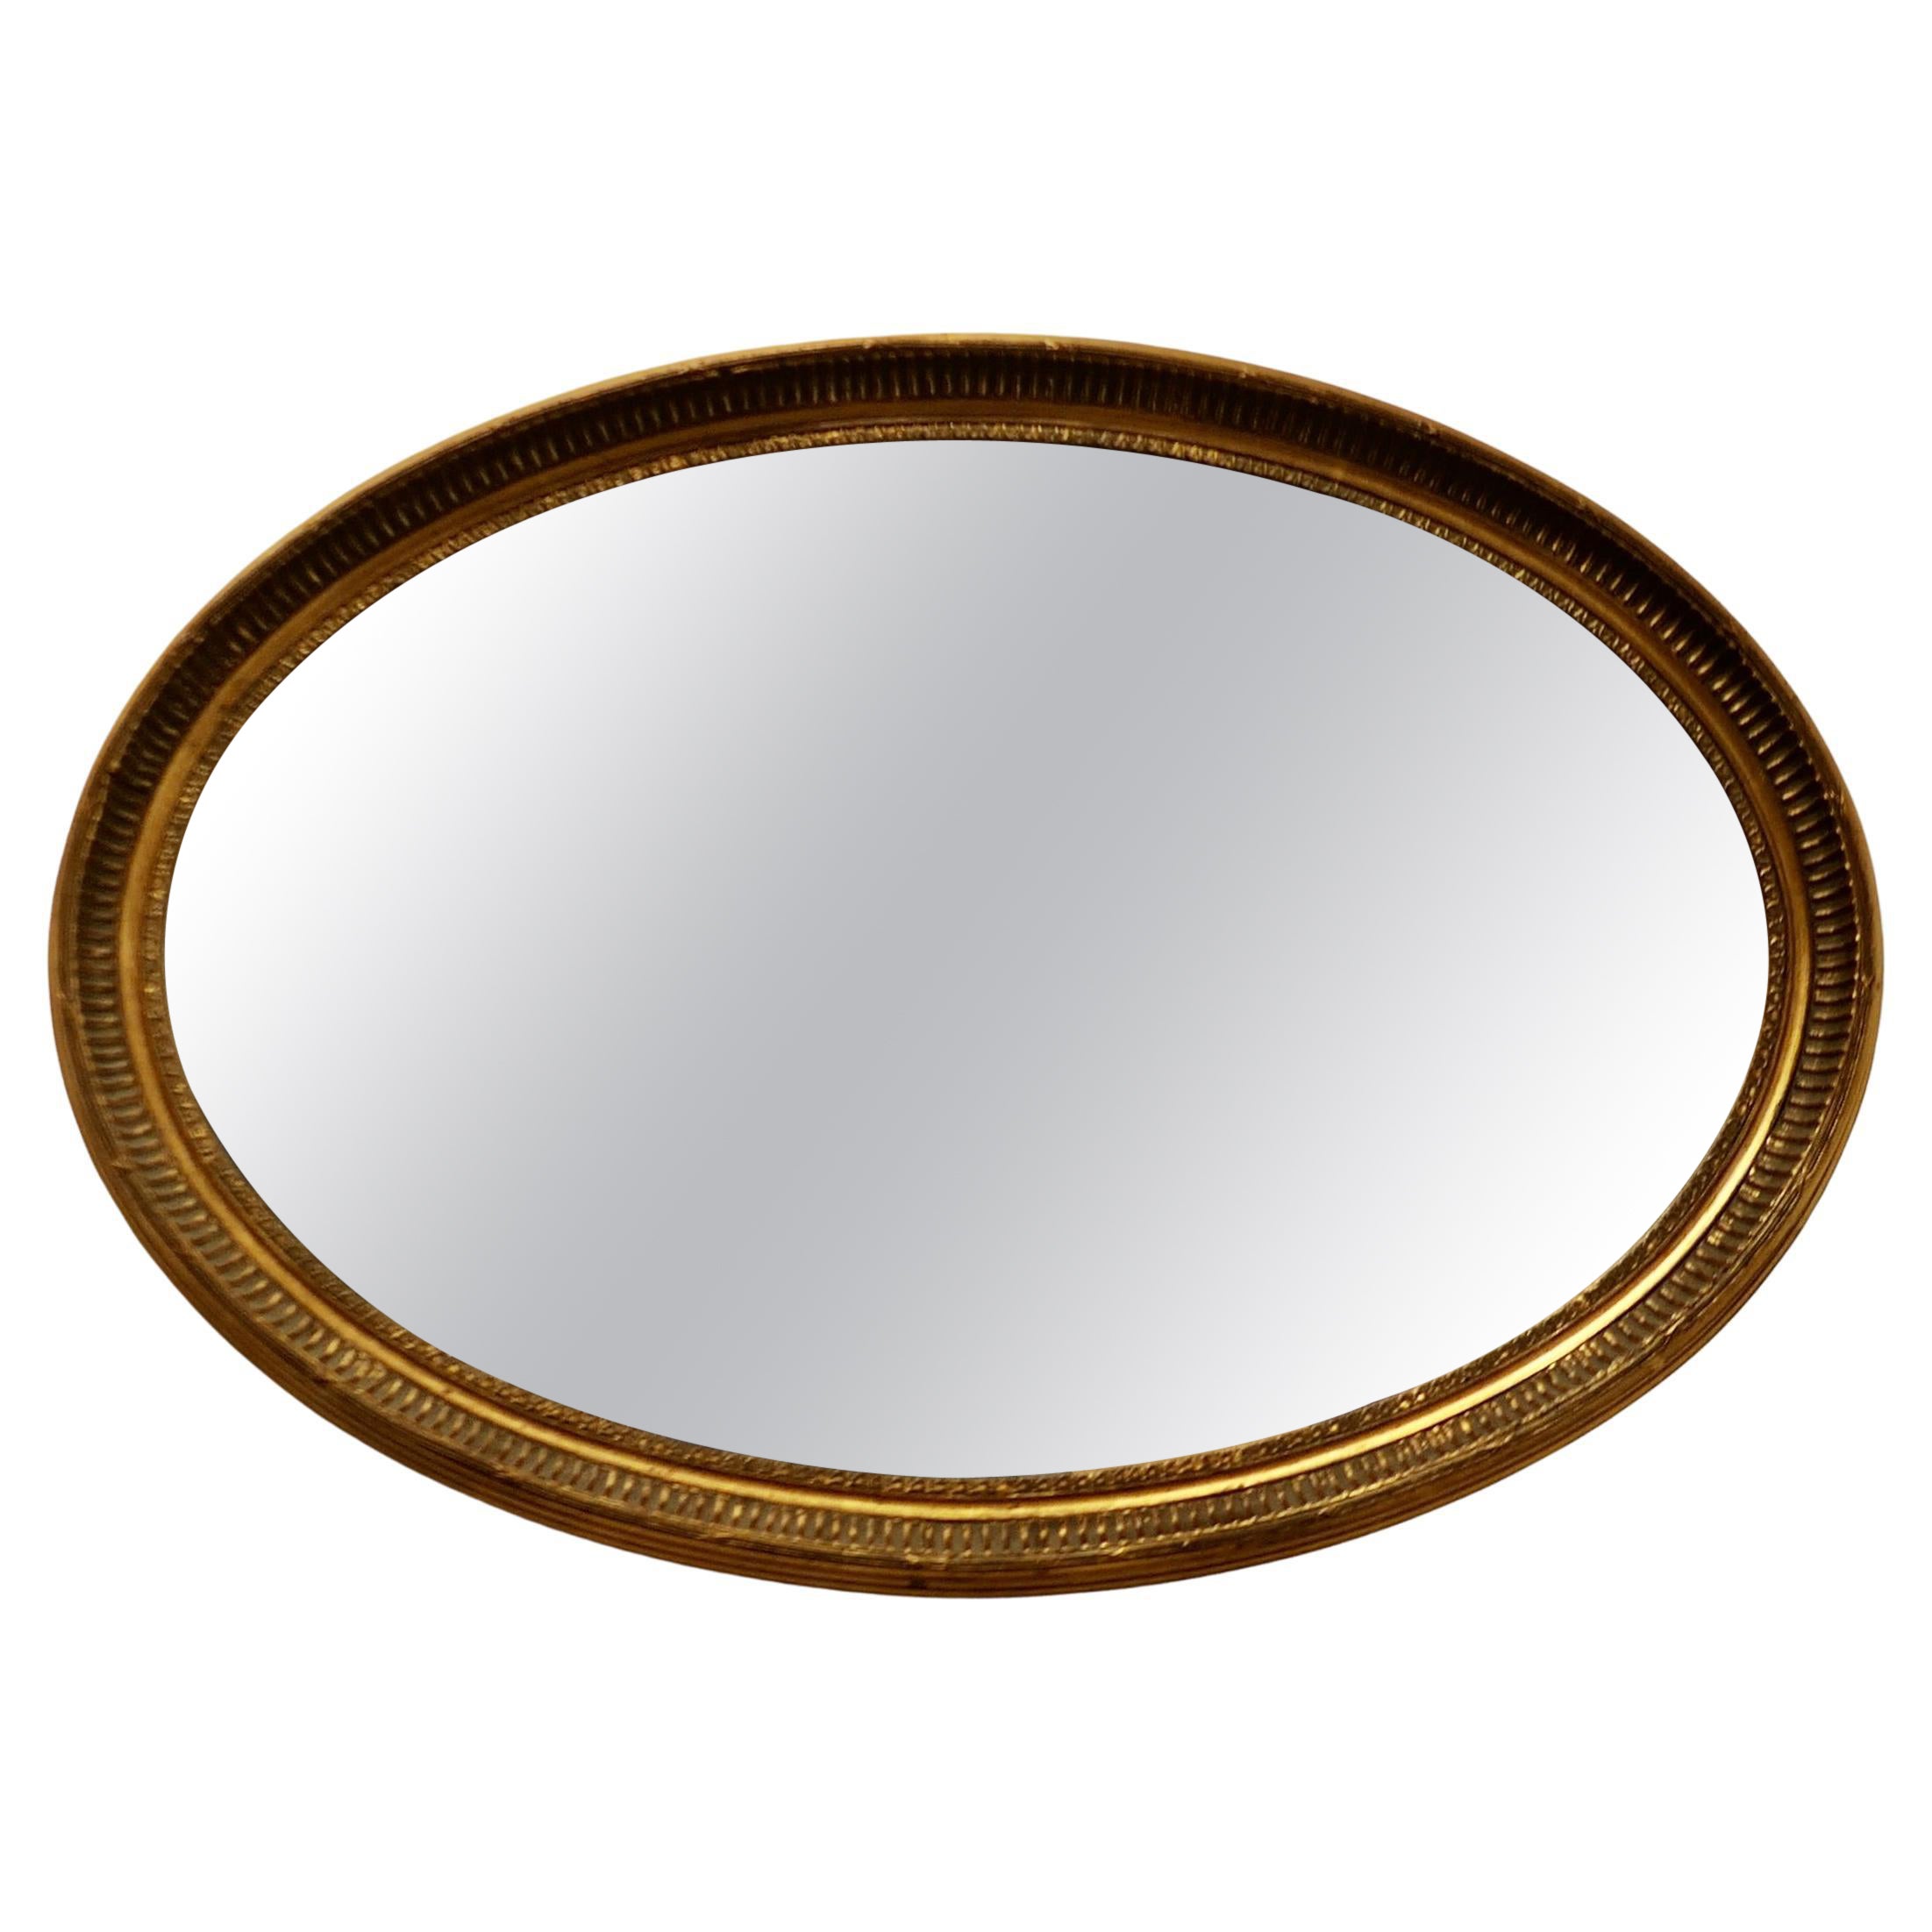 Grand miroir ovale doré   